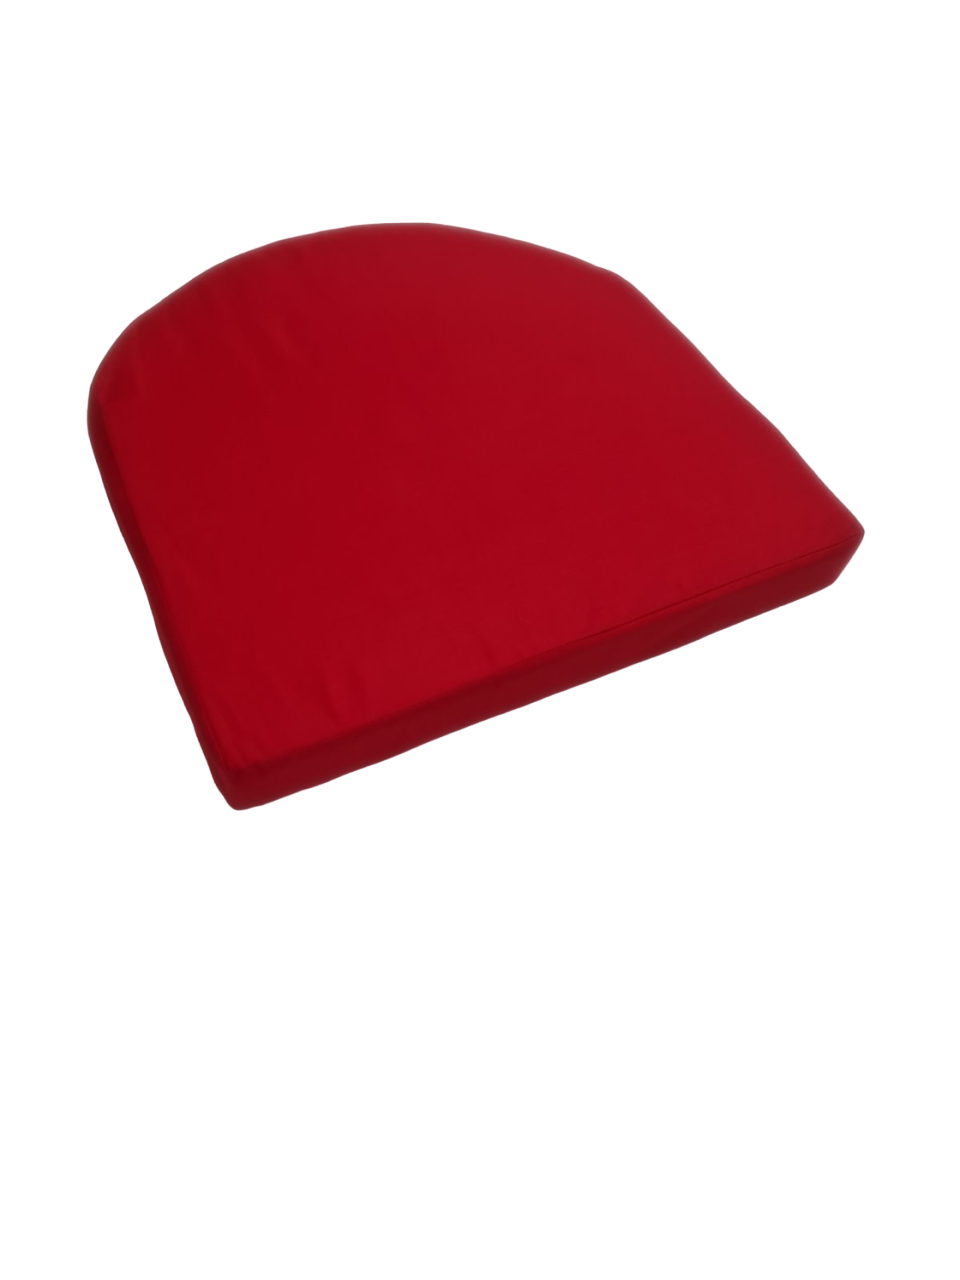 Μαξιλάρι Κάθισμα Φέρ-Φορζέ 44x44x4 Μονόχρωμο Κόκκινο